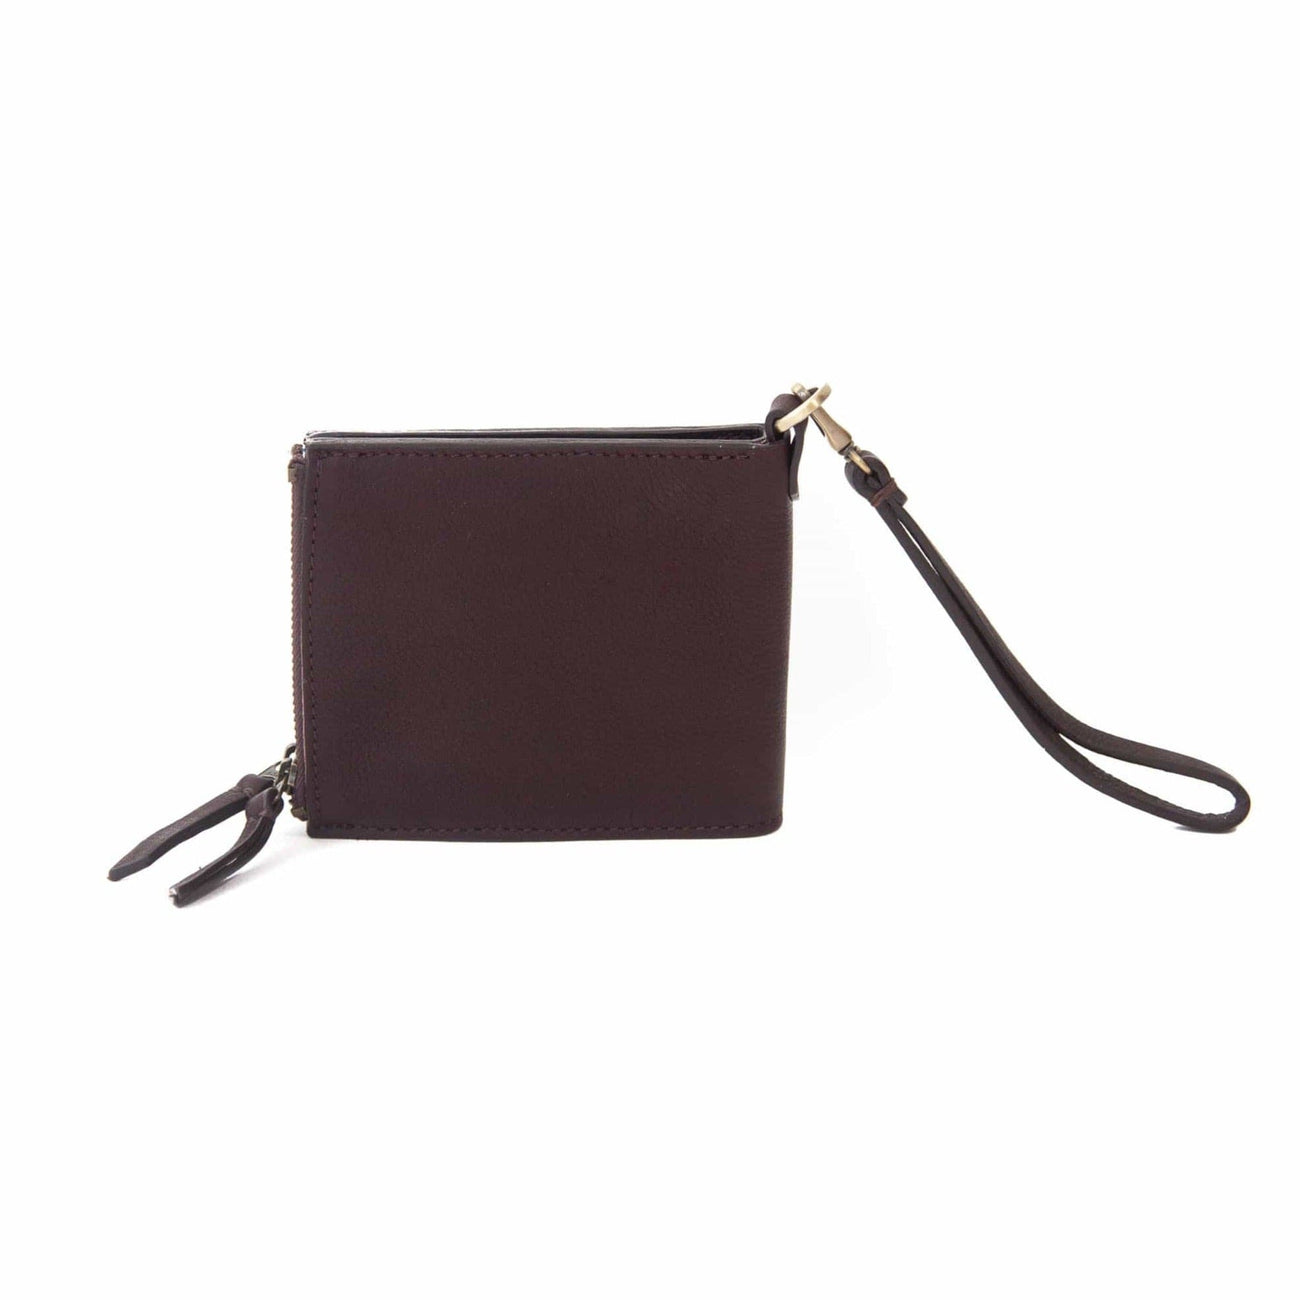 Noelle Leather Billfold Wristlet Wallet